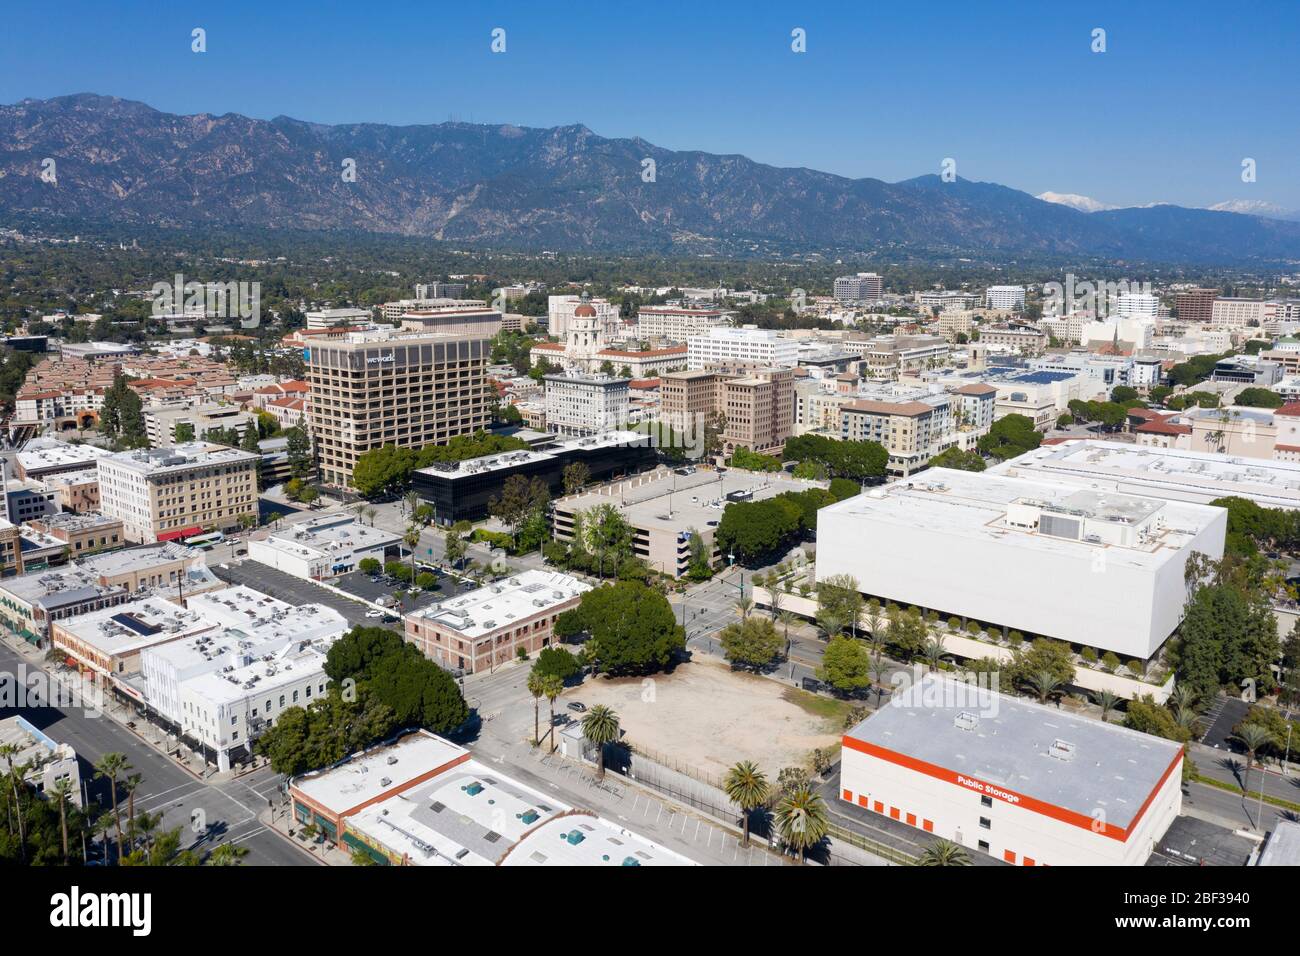 Vista aerea sul centro di Pasadena, California, in una giornata limpida con le San Gabriel Mountains in lontananza Foto Stock